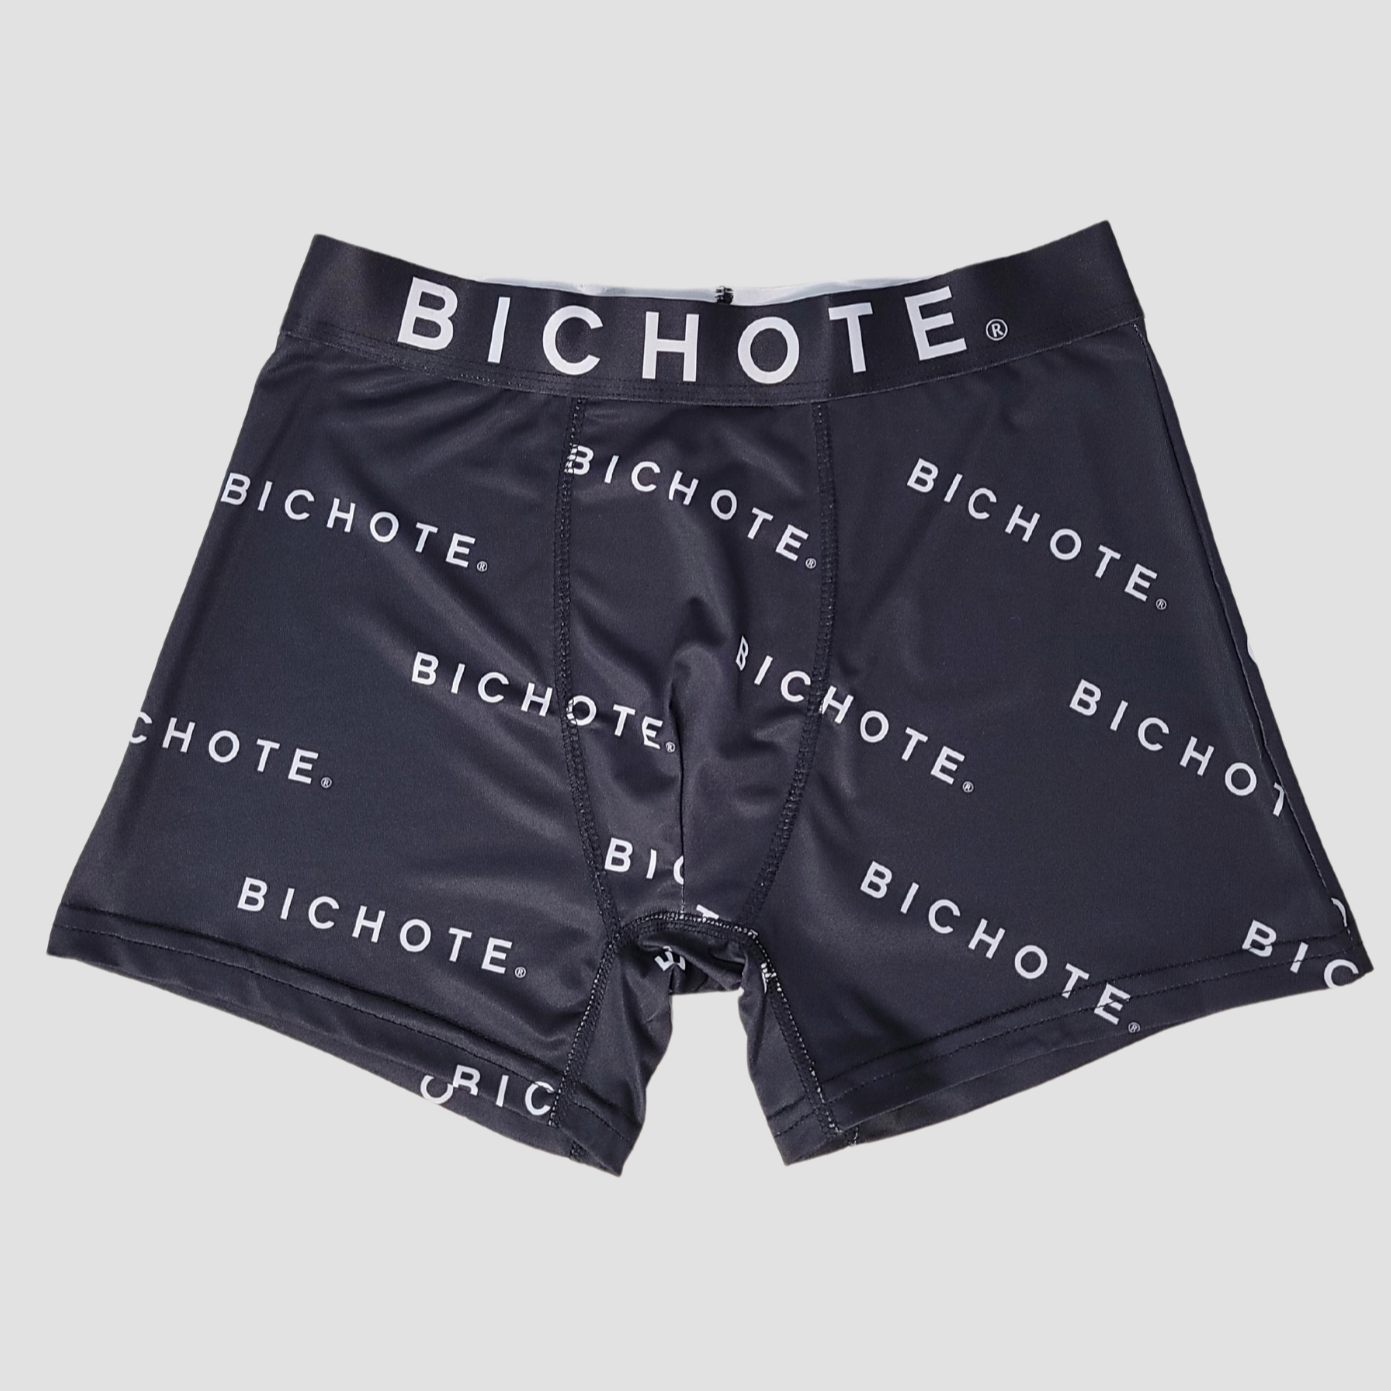 BICHOTE ® Underwear -BICHOTE